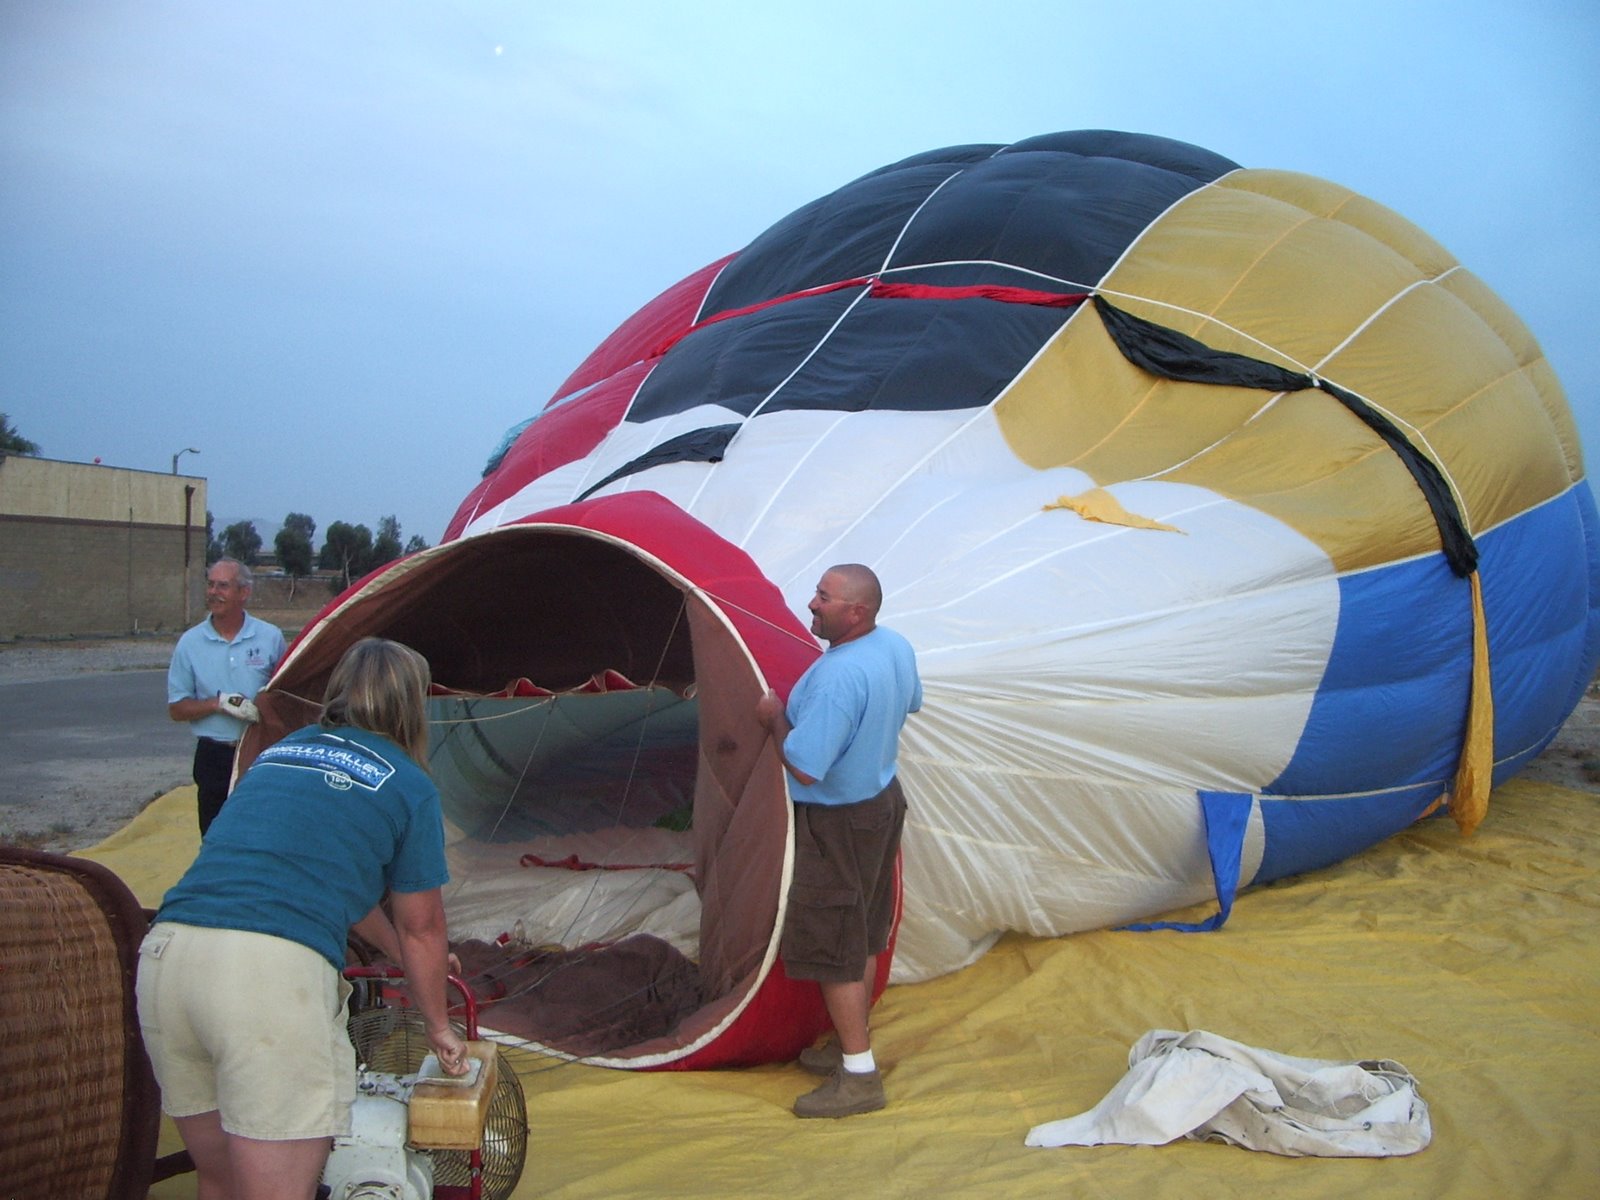 Our Hot Air Balloon